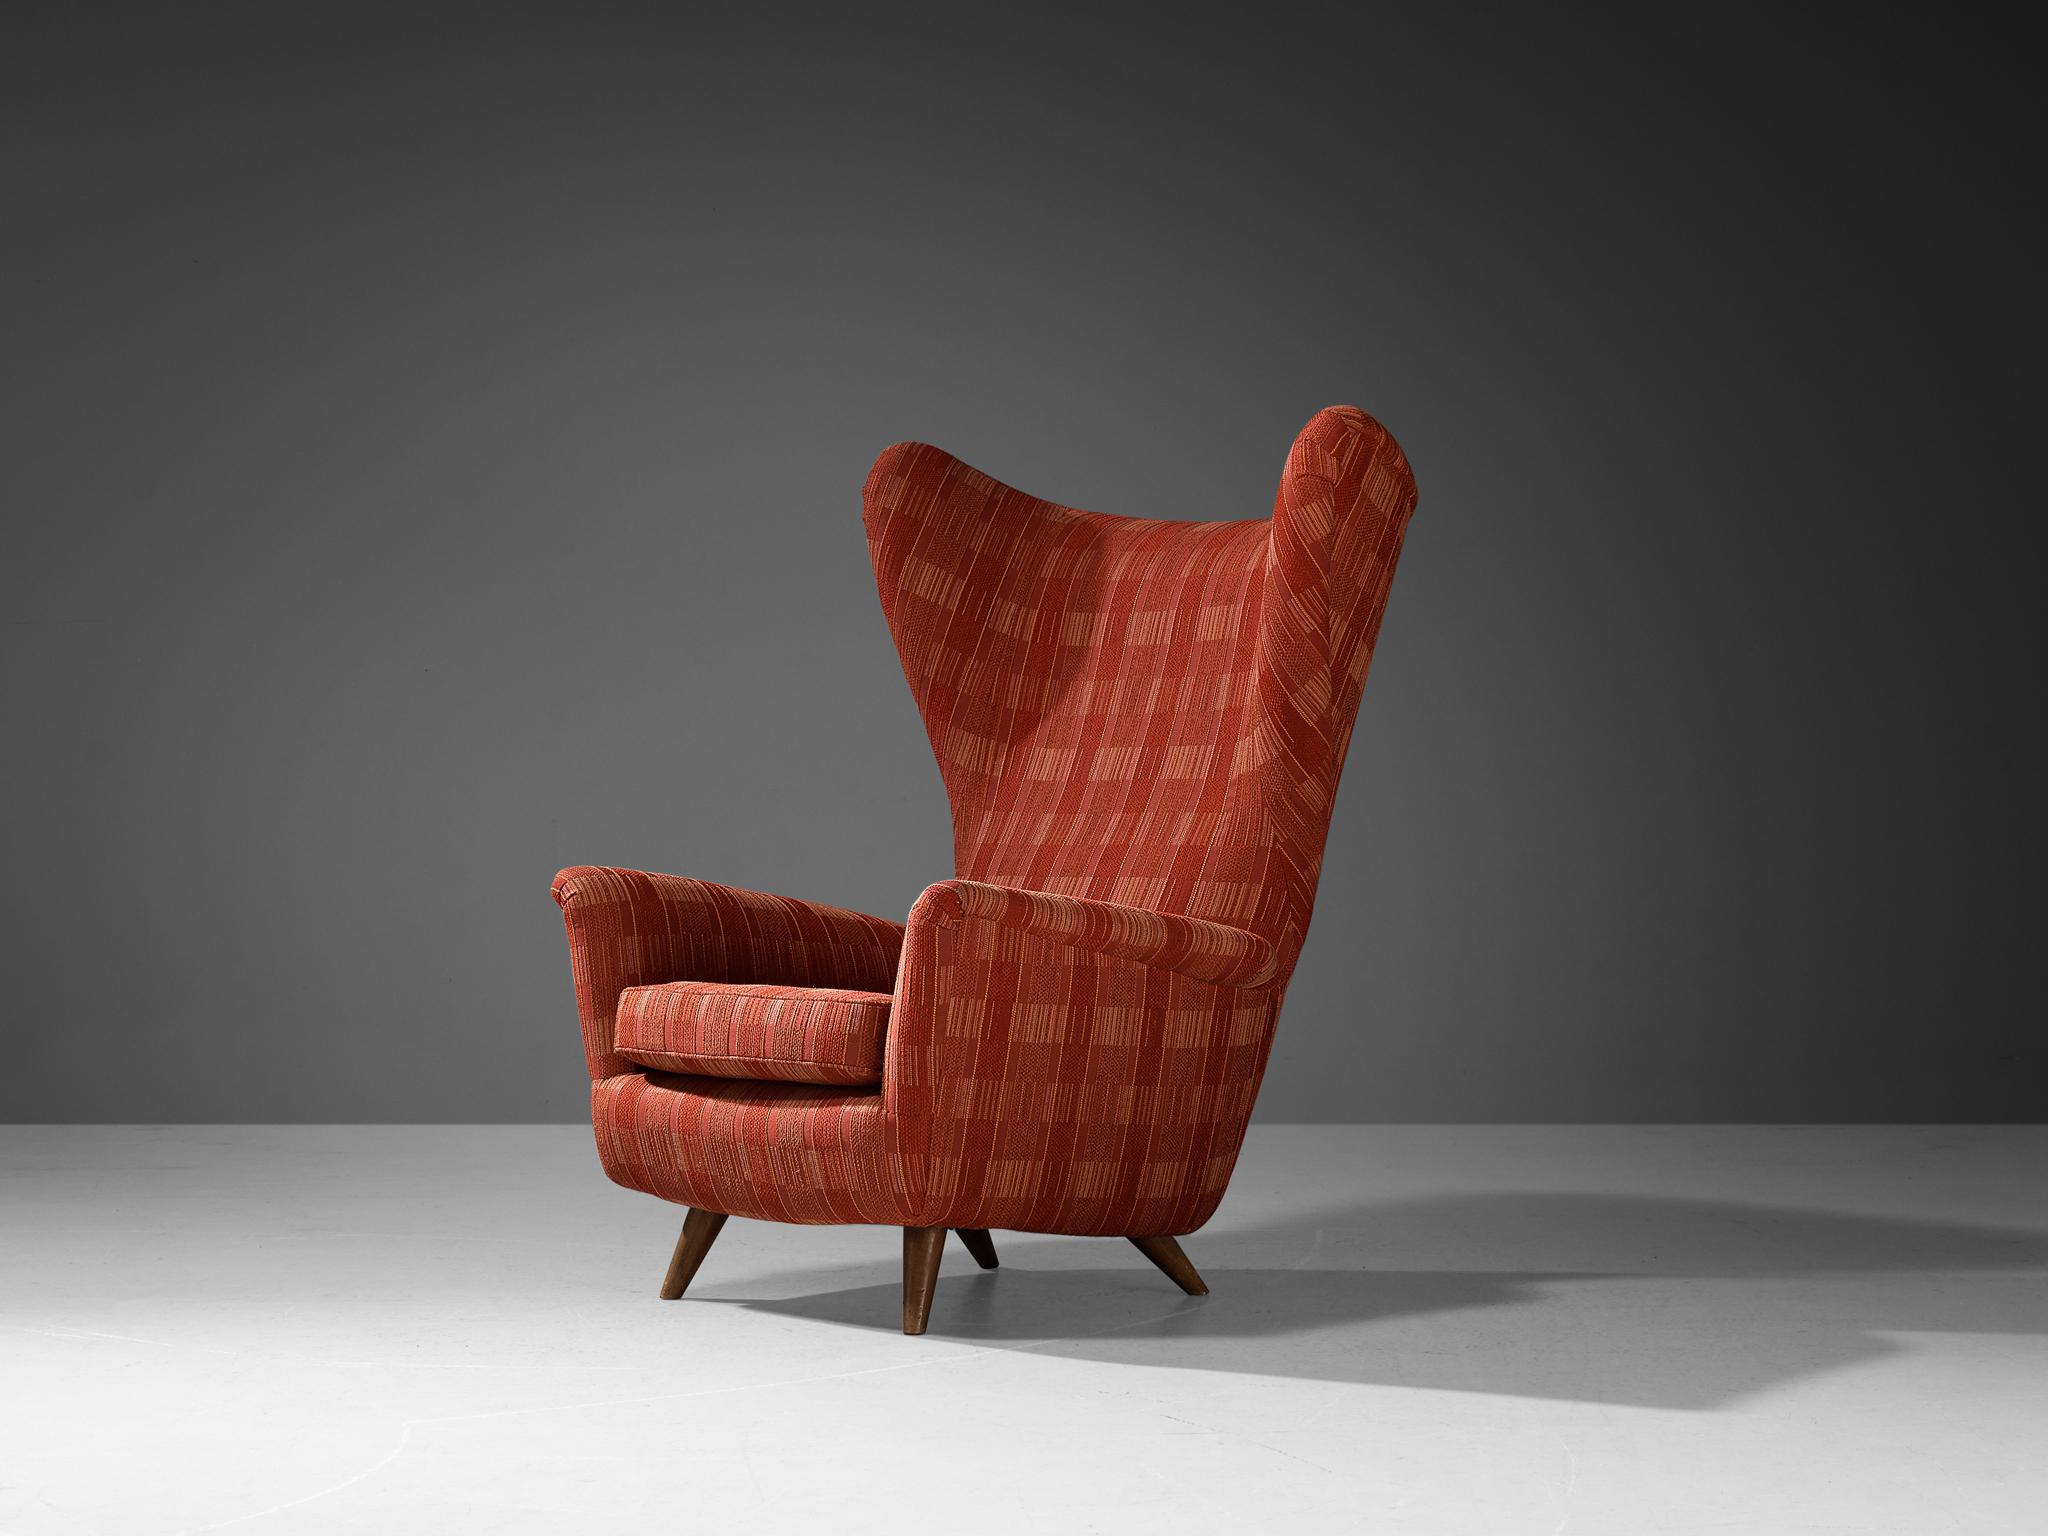 Chaise à dossier, tissu, bois, Italie, années 1950.

Cette chaise classique italienne d'après-guerre à dossier a un dossier exceptionnellement haut et des ailes gracieuses qui contiennent des coins pointus dramatisés. Les élégants accoudoirs sont